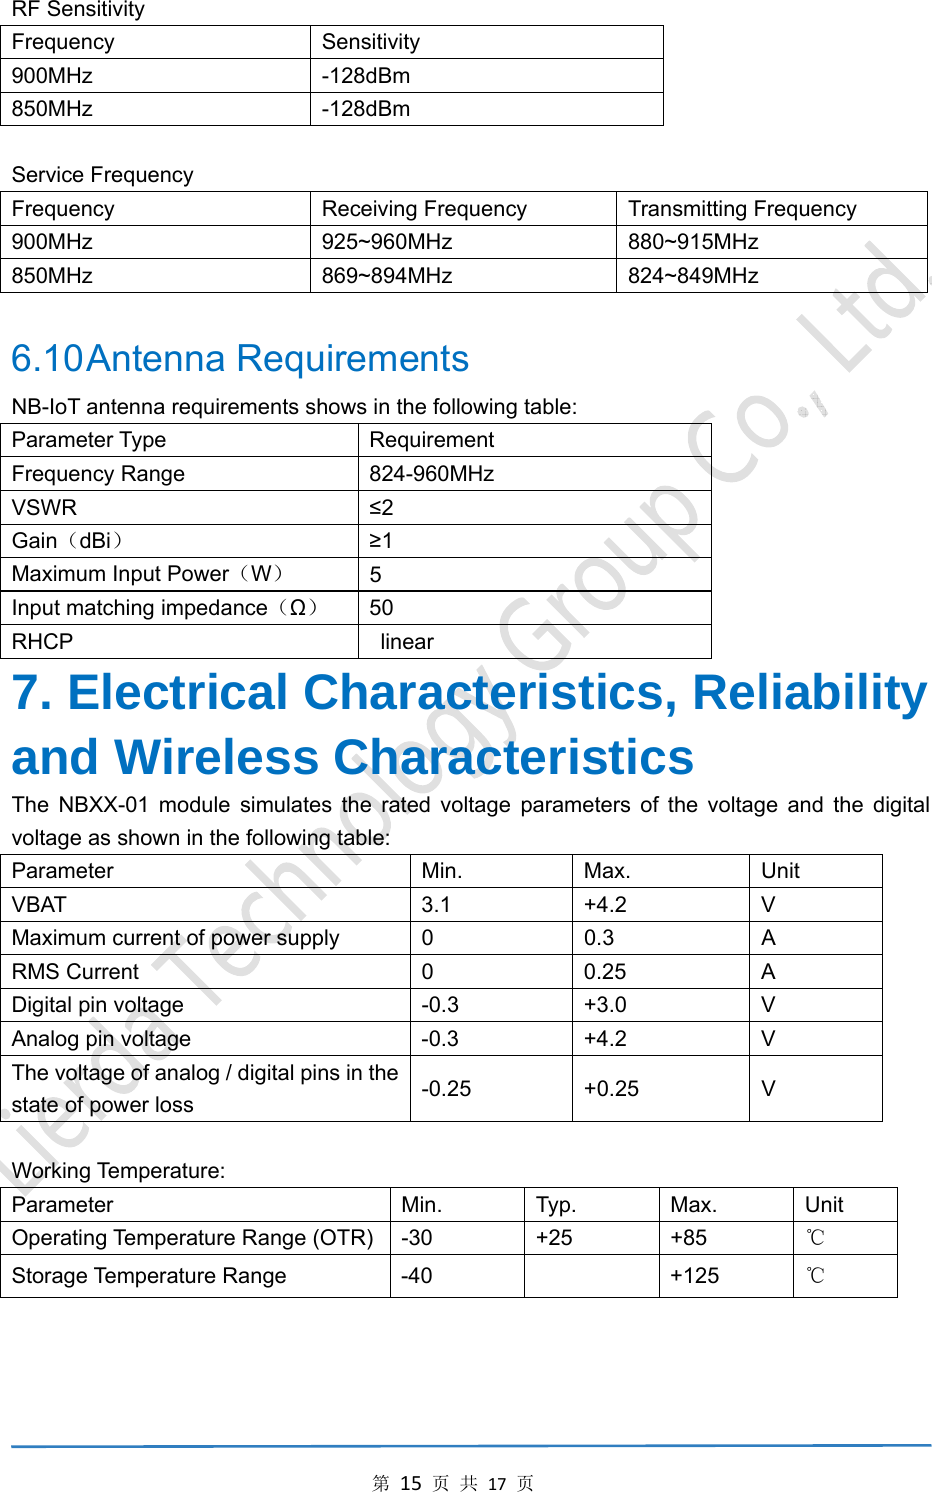 第15页共17页RF Sensitivity Frequency Sensitivity 900MHz -128dBm 850MHz -128dBm  Service Frequency Frequency Receiving Frequency Transmitting Frequency 900MHz 925~960MHz 880~915MHz 850MHz 869~894MHz 824~849MHz  6.10 Antenna  Requirements NB-IoT antenna requirements shows in the following table: Parameter Type    Requirement Frequency Range    824-960MHz   VSWR  ≤2 Gain（dBi） ≥1 Maximum Input Power（W） 5 Input matching impedance（Ω） 50 RHCP  linear 7. Electrical Characteristics, Reliability and Wireless Characteristics The NBXX-01 module simulates the rated voltage parameters of the voltage and the digital voltage as shown in the following table: Parameter   Min.  Max.  Unit VBAT 3.1 +4.2 V Maximum current of power supply  0  0.3  A RMS Current  0  0.25  A Digital pin voltage  -0.3  +3.0  V Analog pin voltage  -0.3  +4.2  V The voltage of analog / digital pins in the state of power loss  -0.25 +0.25  V  Working Temperature: Parameter   Min. Typ. Max. Unit Operating Temperature Range (OTR) -30  +25  +85  ℃ Storage Temperature Range  -40    +125  ℃   